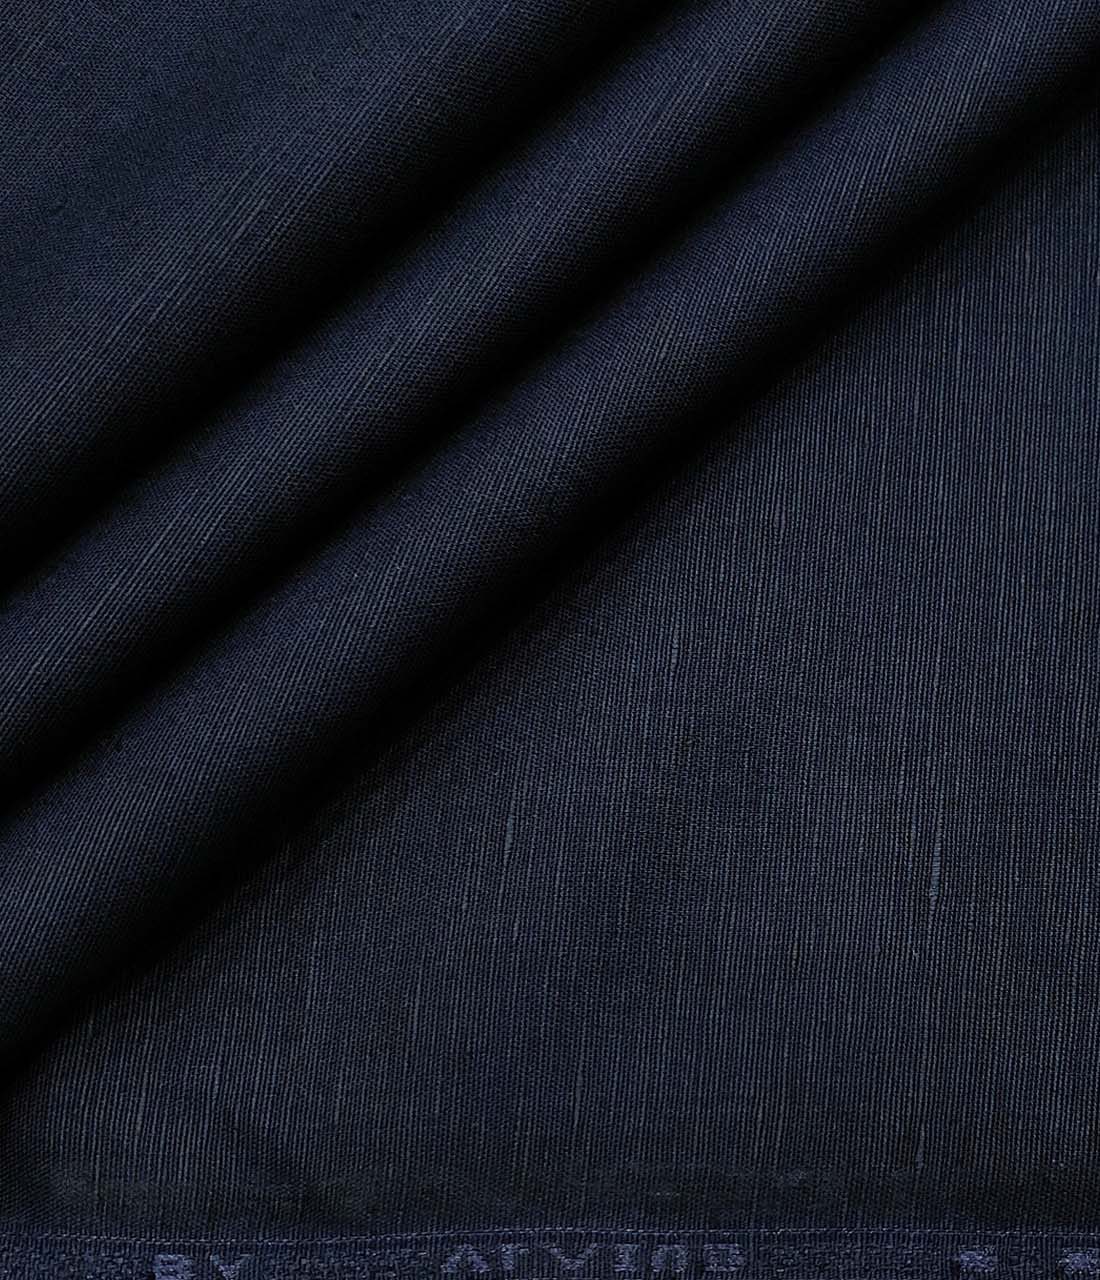 Arvind Men's Cotton Linen Self Design Unstitched Shirt Fabric (Dark Navy Blue)